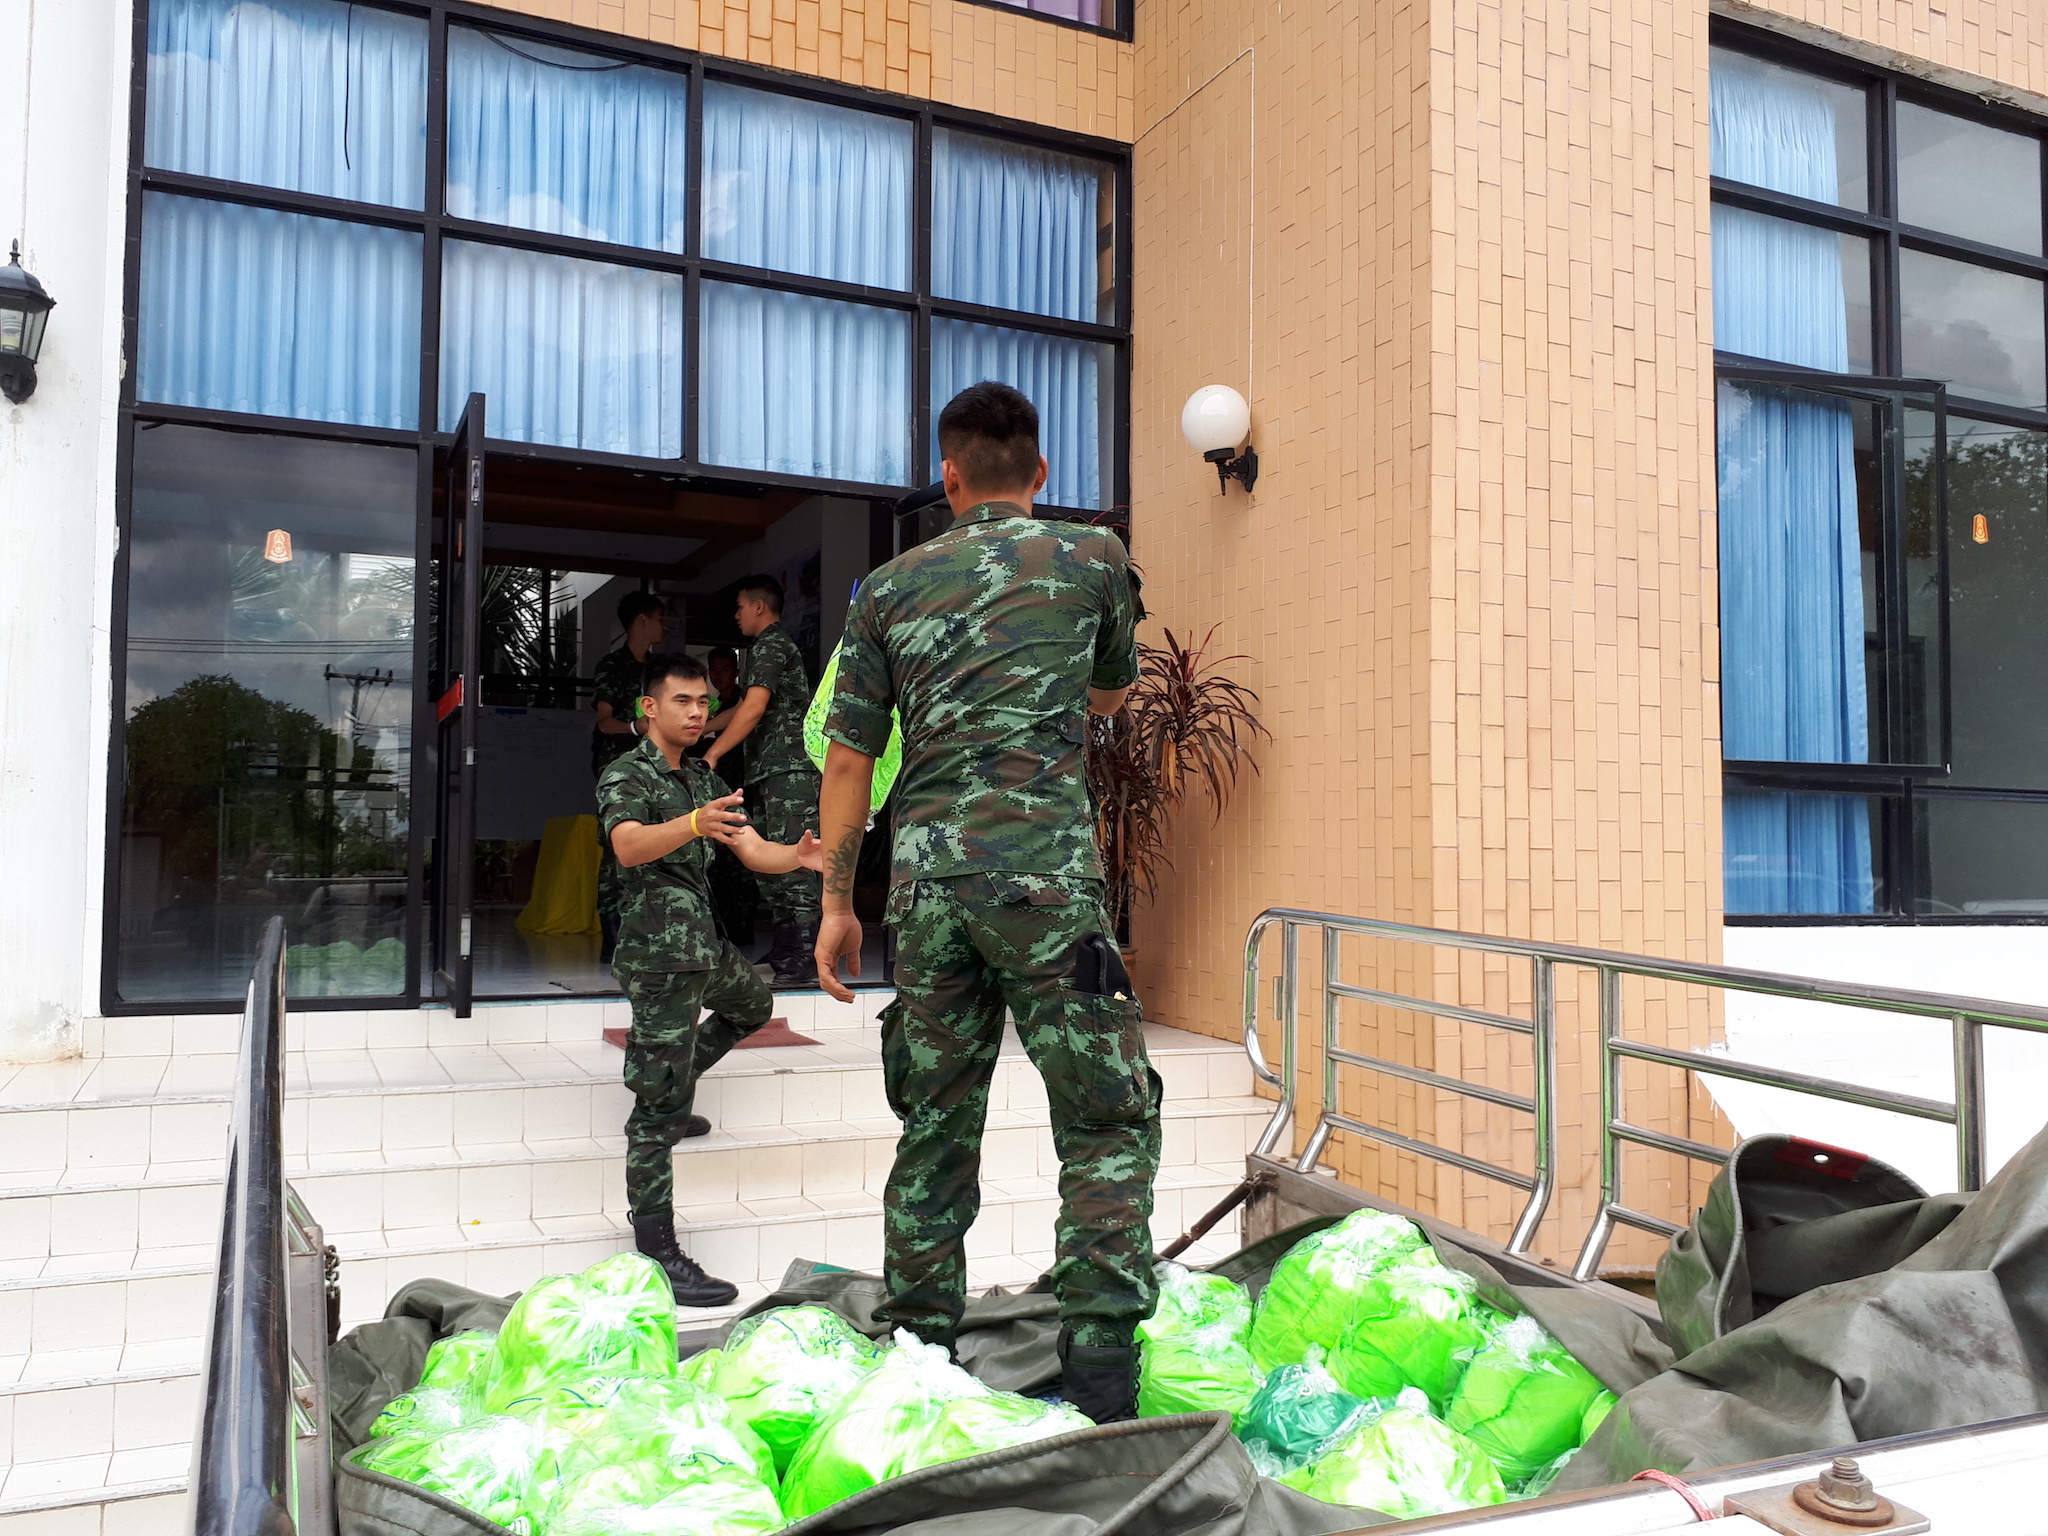 โครงการช่วยเหลือผู้ประภัยน้ำท่วมภาคอีสาน วันที่  7 สิงหาคม 2560  ณ มณฑลทหารบกที่ 23 ค่ายศรีพัชรินทร อ.เมือง  จ.ขอนแก่น   